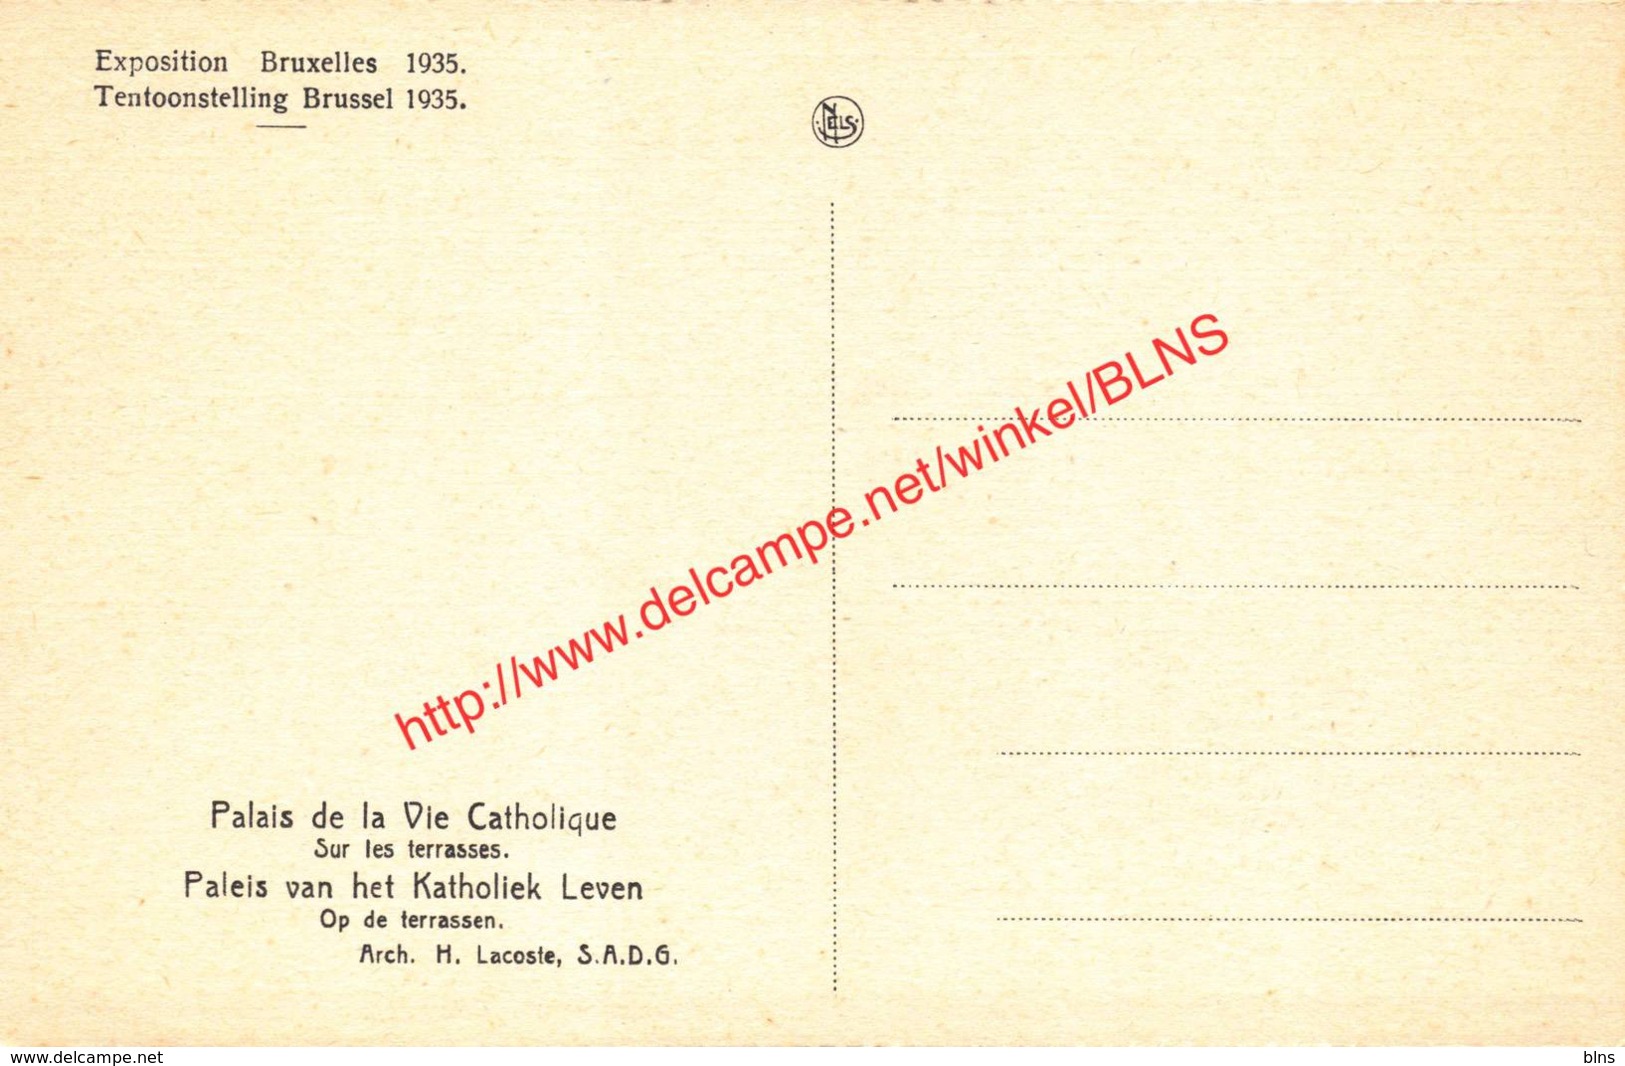 Palais De La Vie Catholique - Exposition Universelle Et Internationale De Bruxelles 1935 - Brussel Bruxelles - Wereldtentoonstellingen